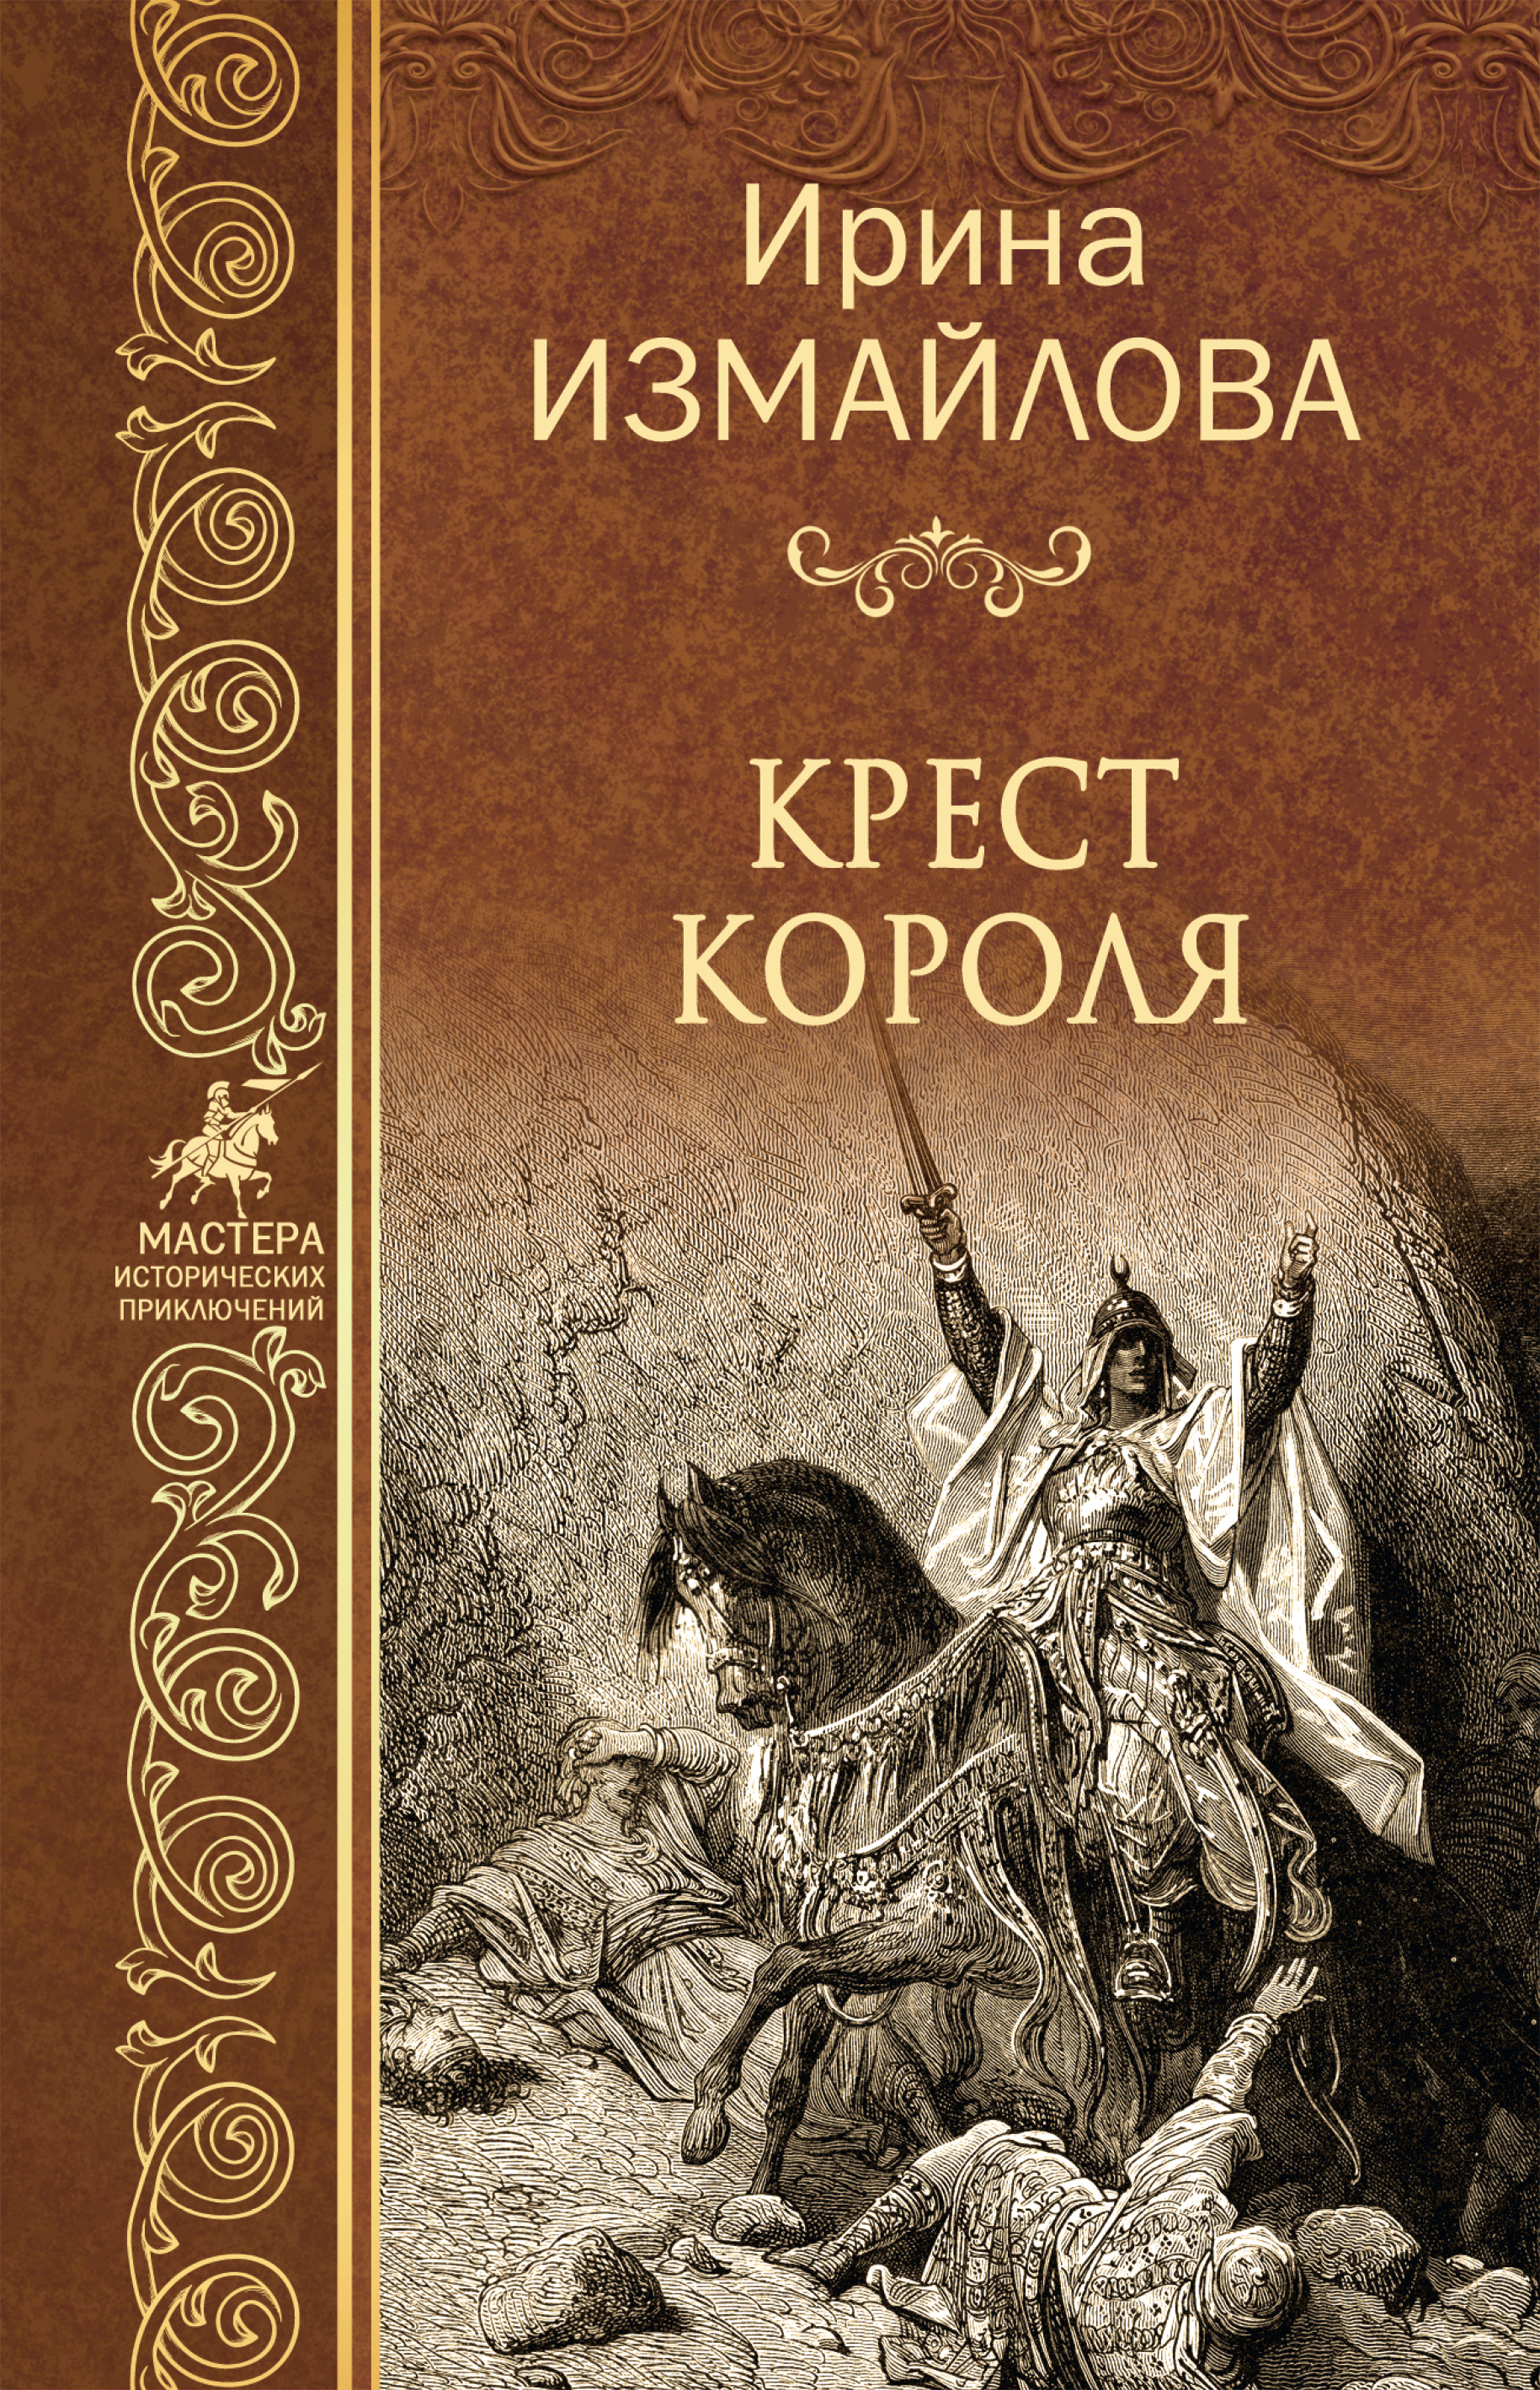 Русские исторические приключения